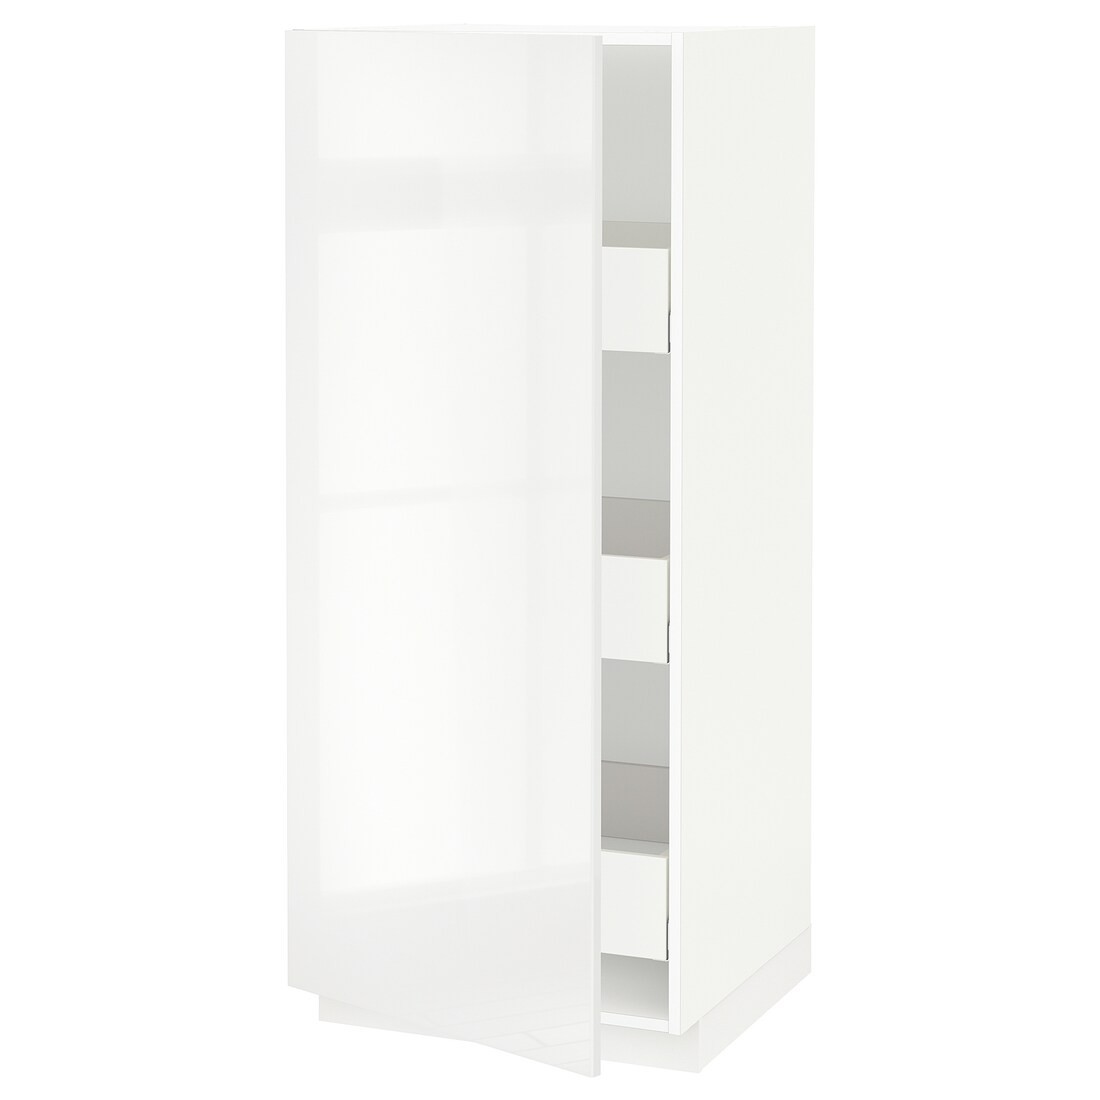 METOD МЕТОД / MAXIMERA МАКСИМЕРА Шкаф высокий с ящиками, белый / Ringhult белый, 60x60x140 см